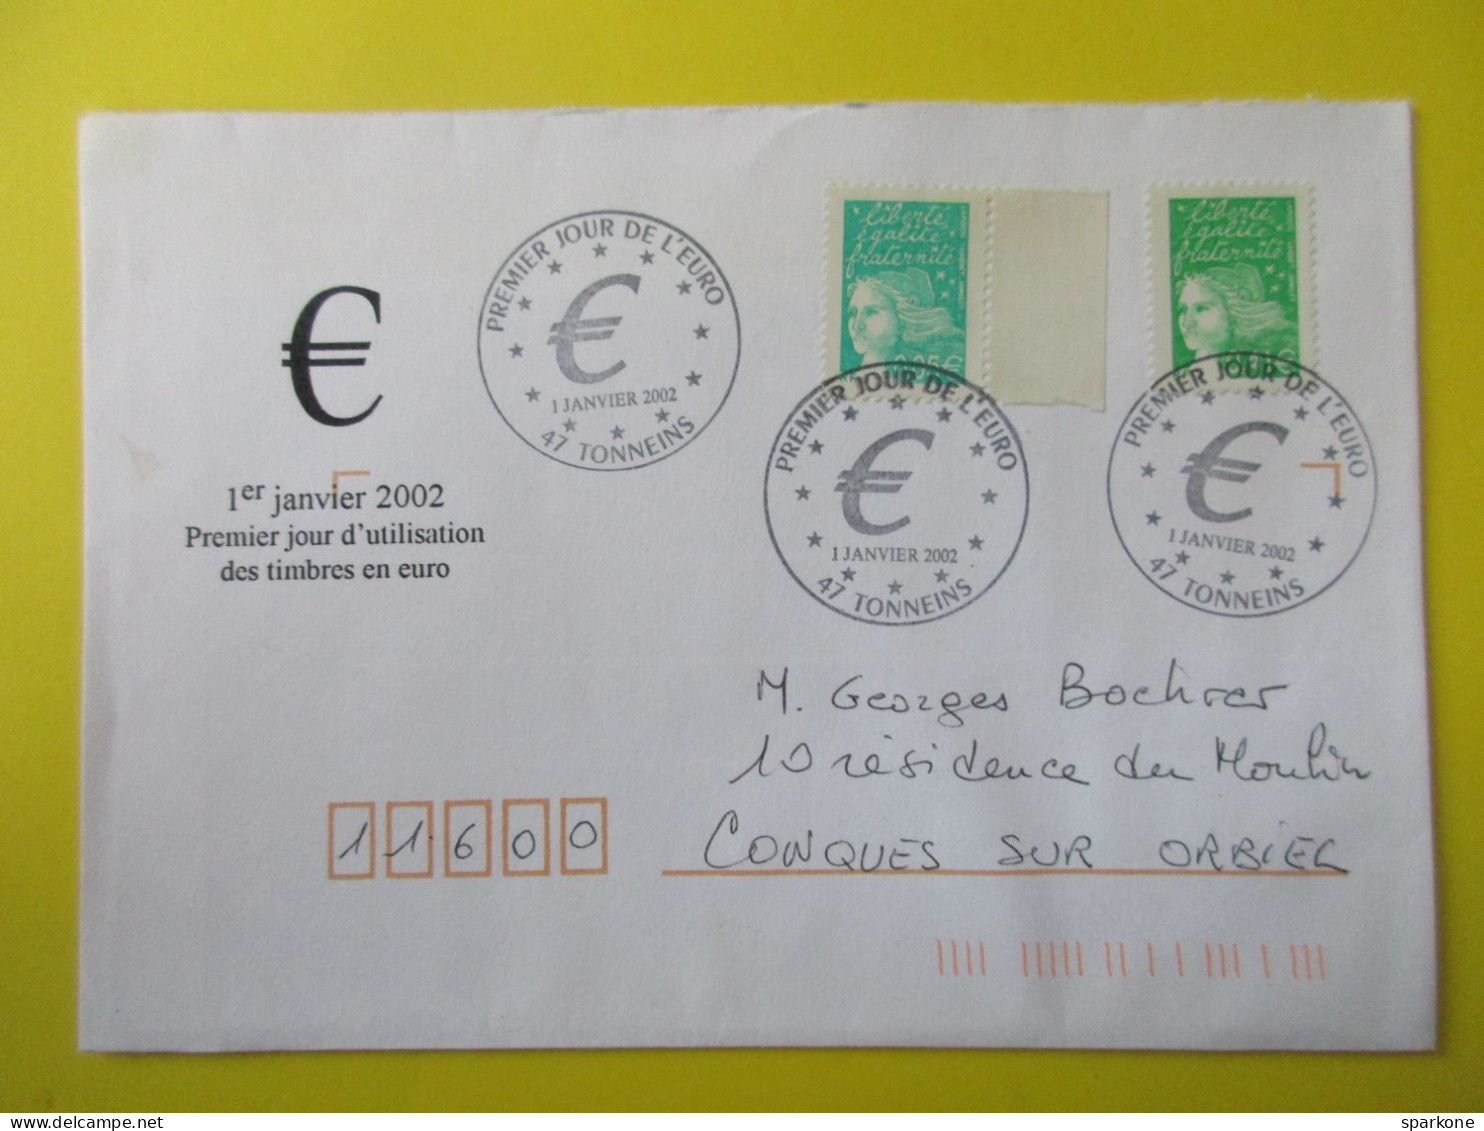 Marcophilie - Enveloppe - France - Cachet Commémoratif - Timbres Poste En €uros - 01 Janvier 2002 - Cachets Commémoratifs